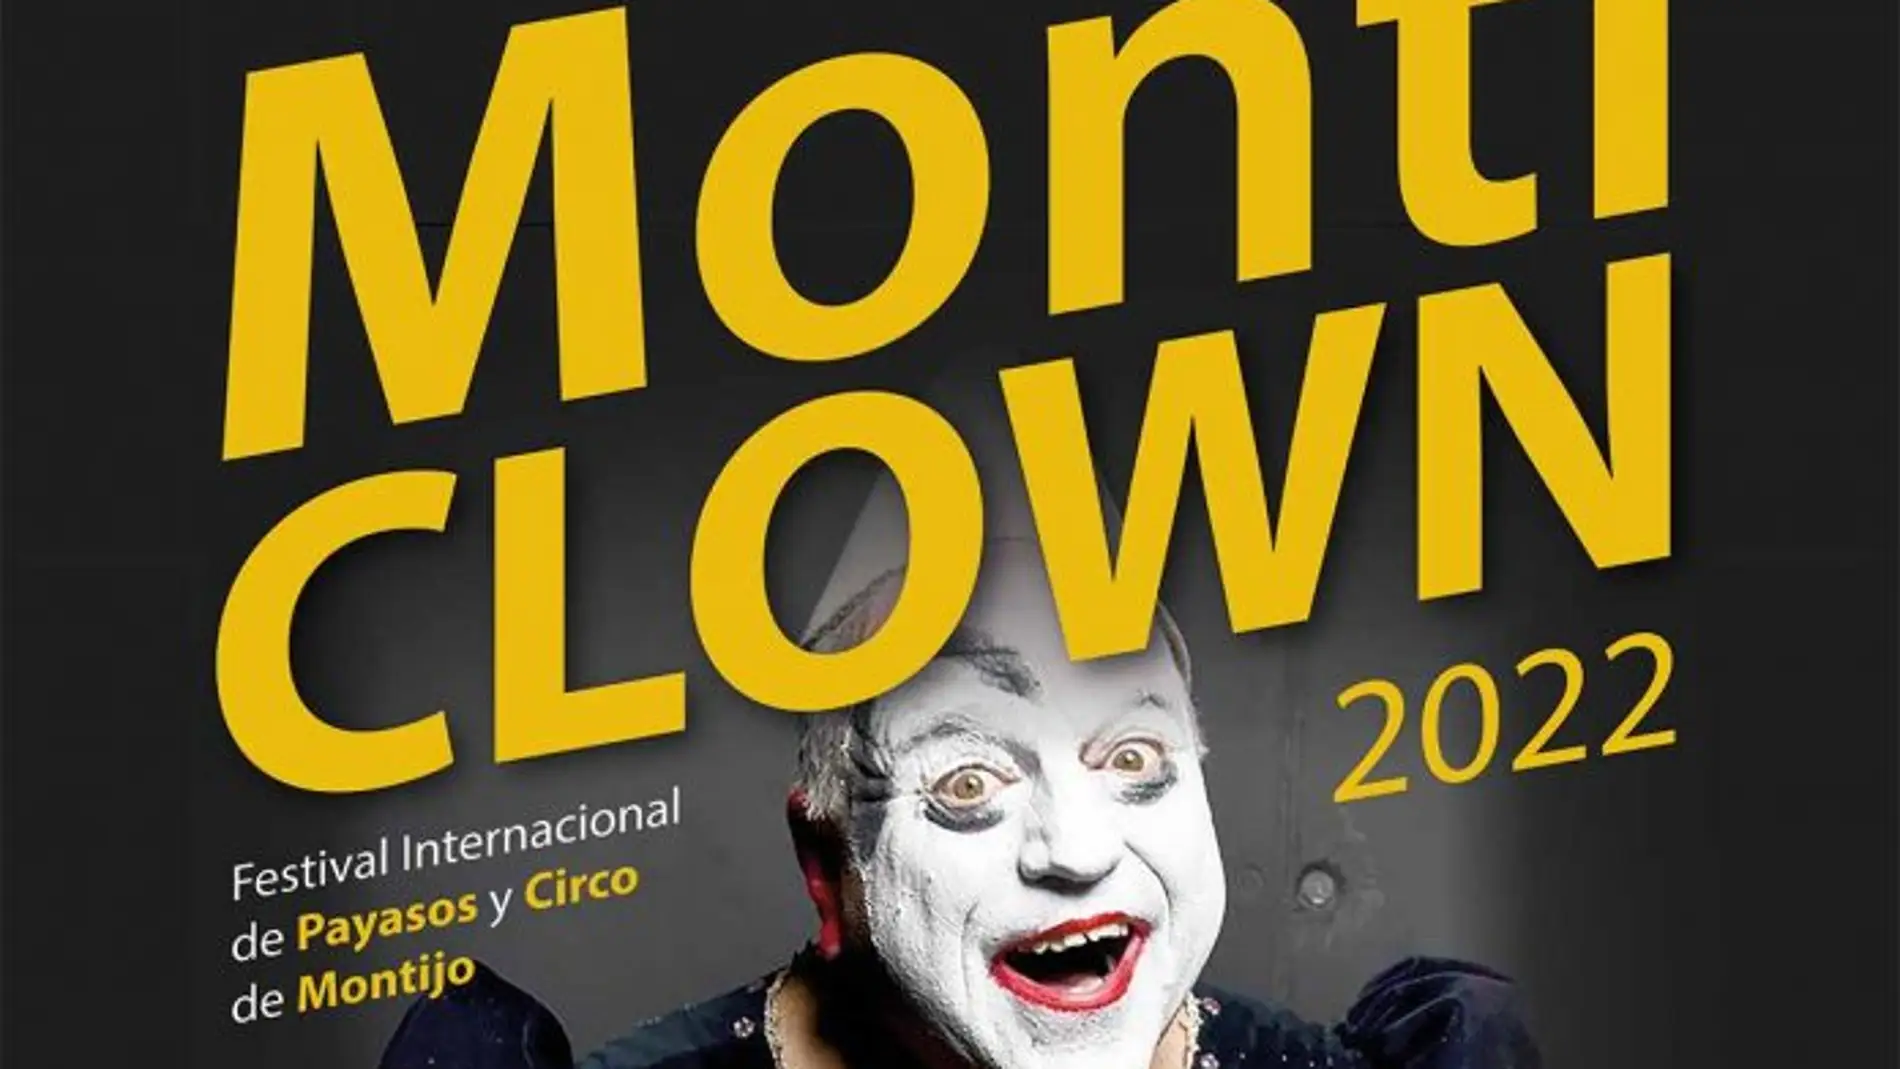 Montijo celebra la IV edición del Festiva Internacional de Payasos y Circos, "Monticlown"